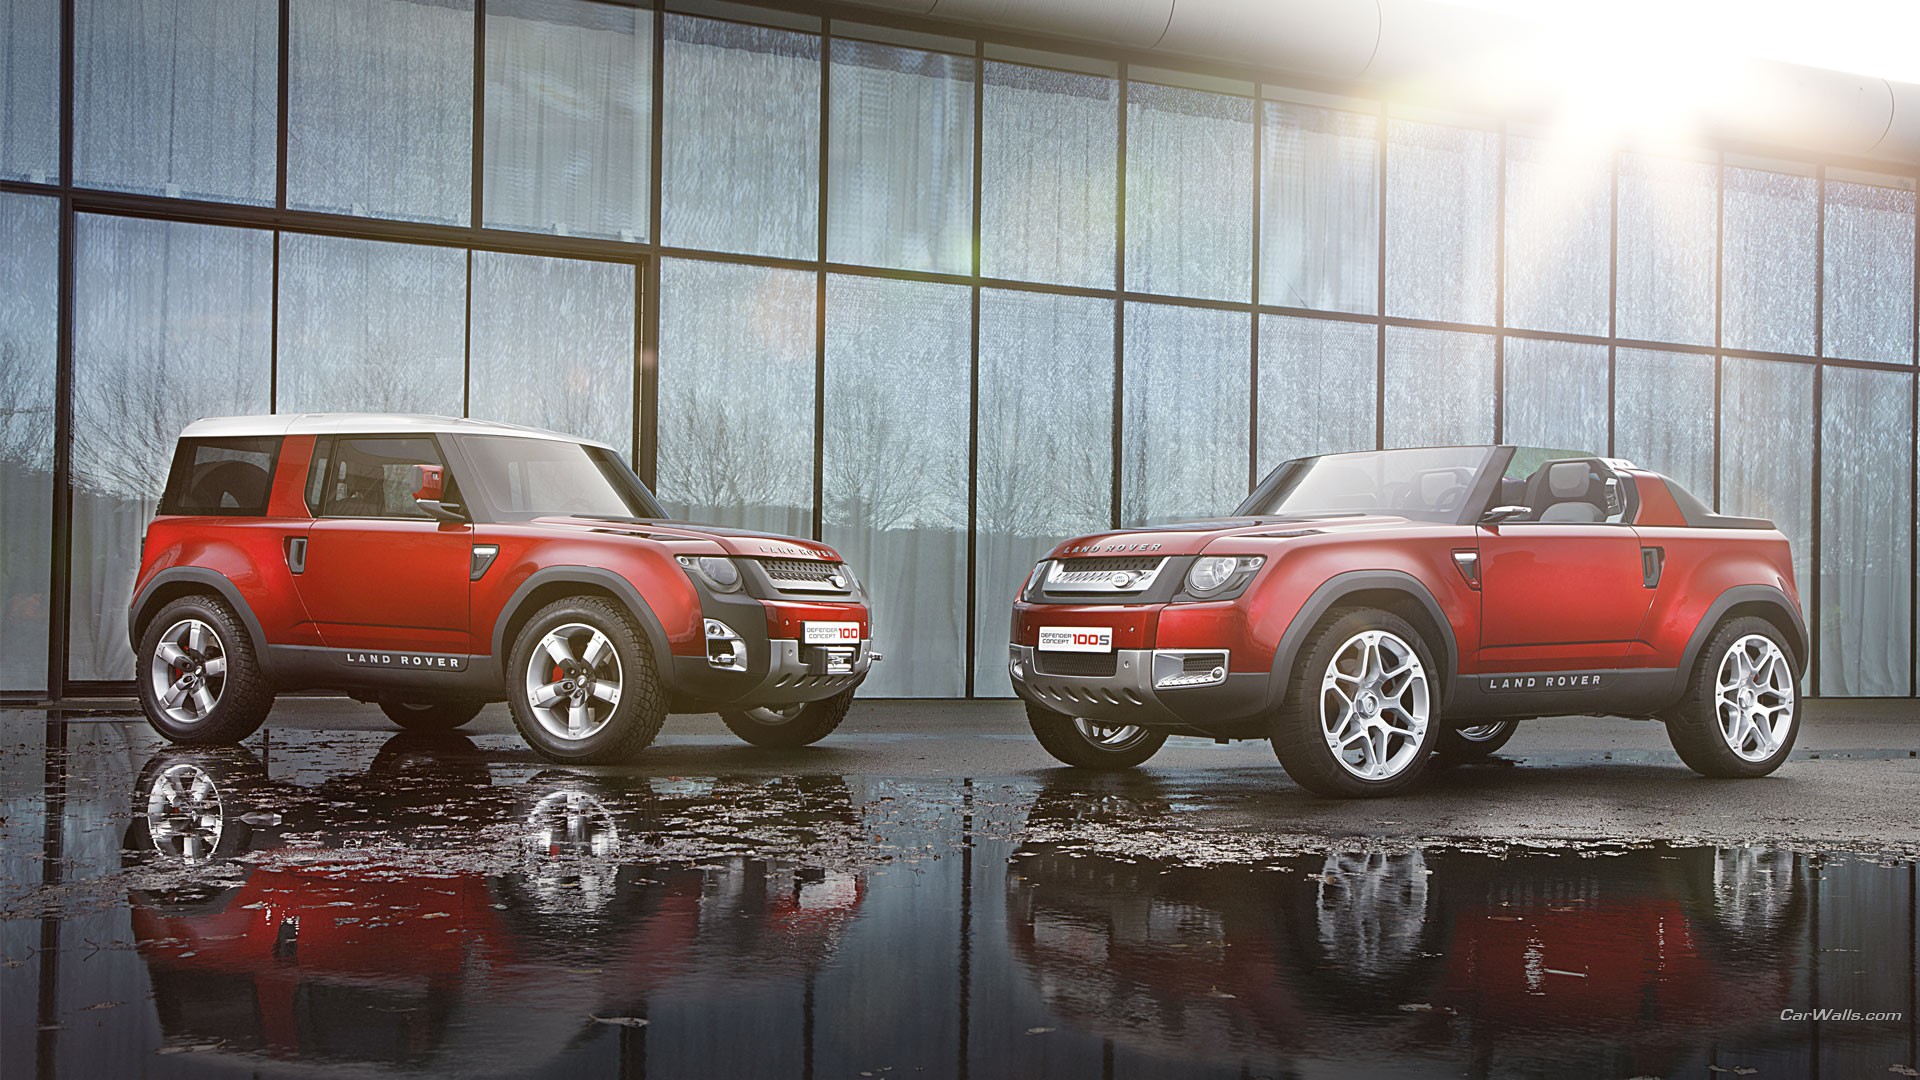 Descarga gratuita de fondo de pantalla para móvil de Land Rover Dc100, Land Rover, Vehículos.